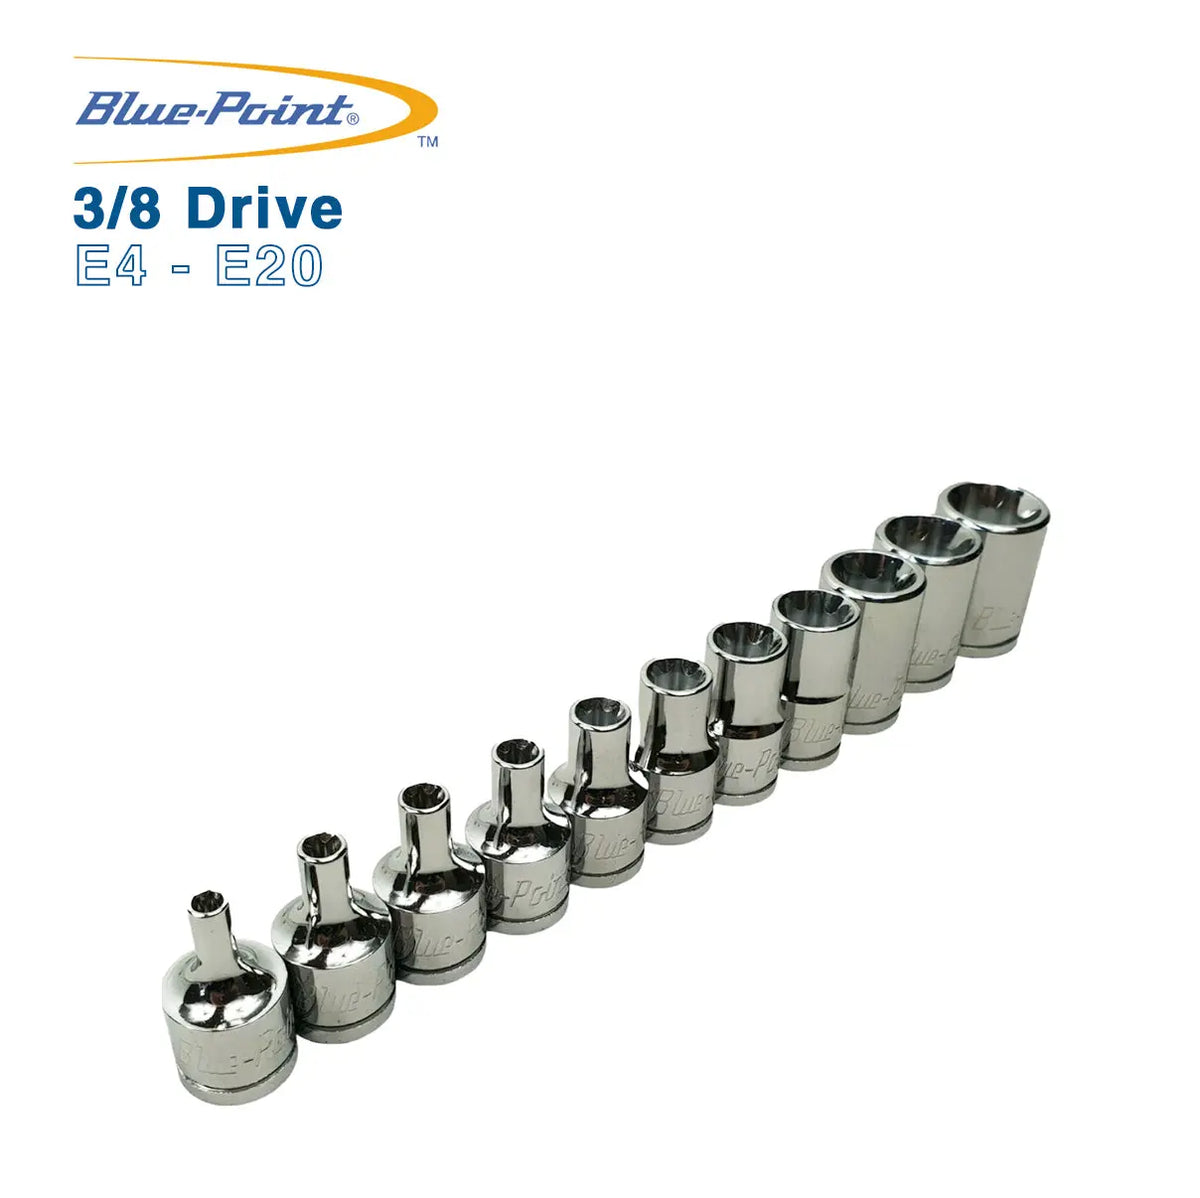 Blue Point External Torx Sockets 3/8 Drive E4 - E20 BluePoint